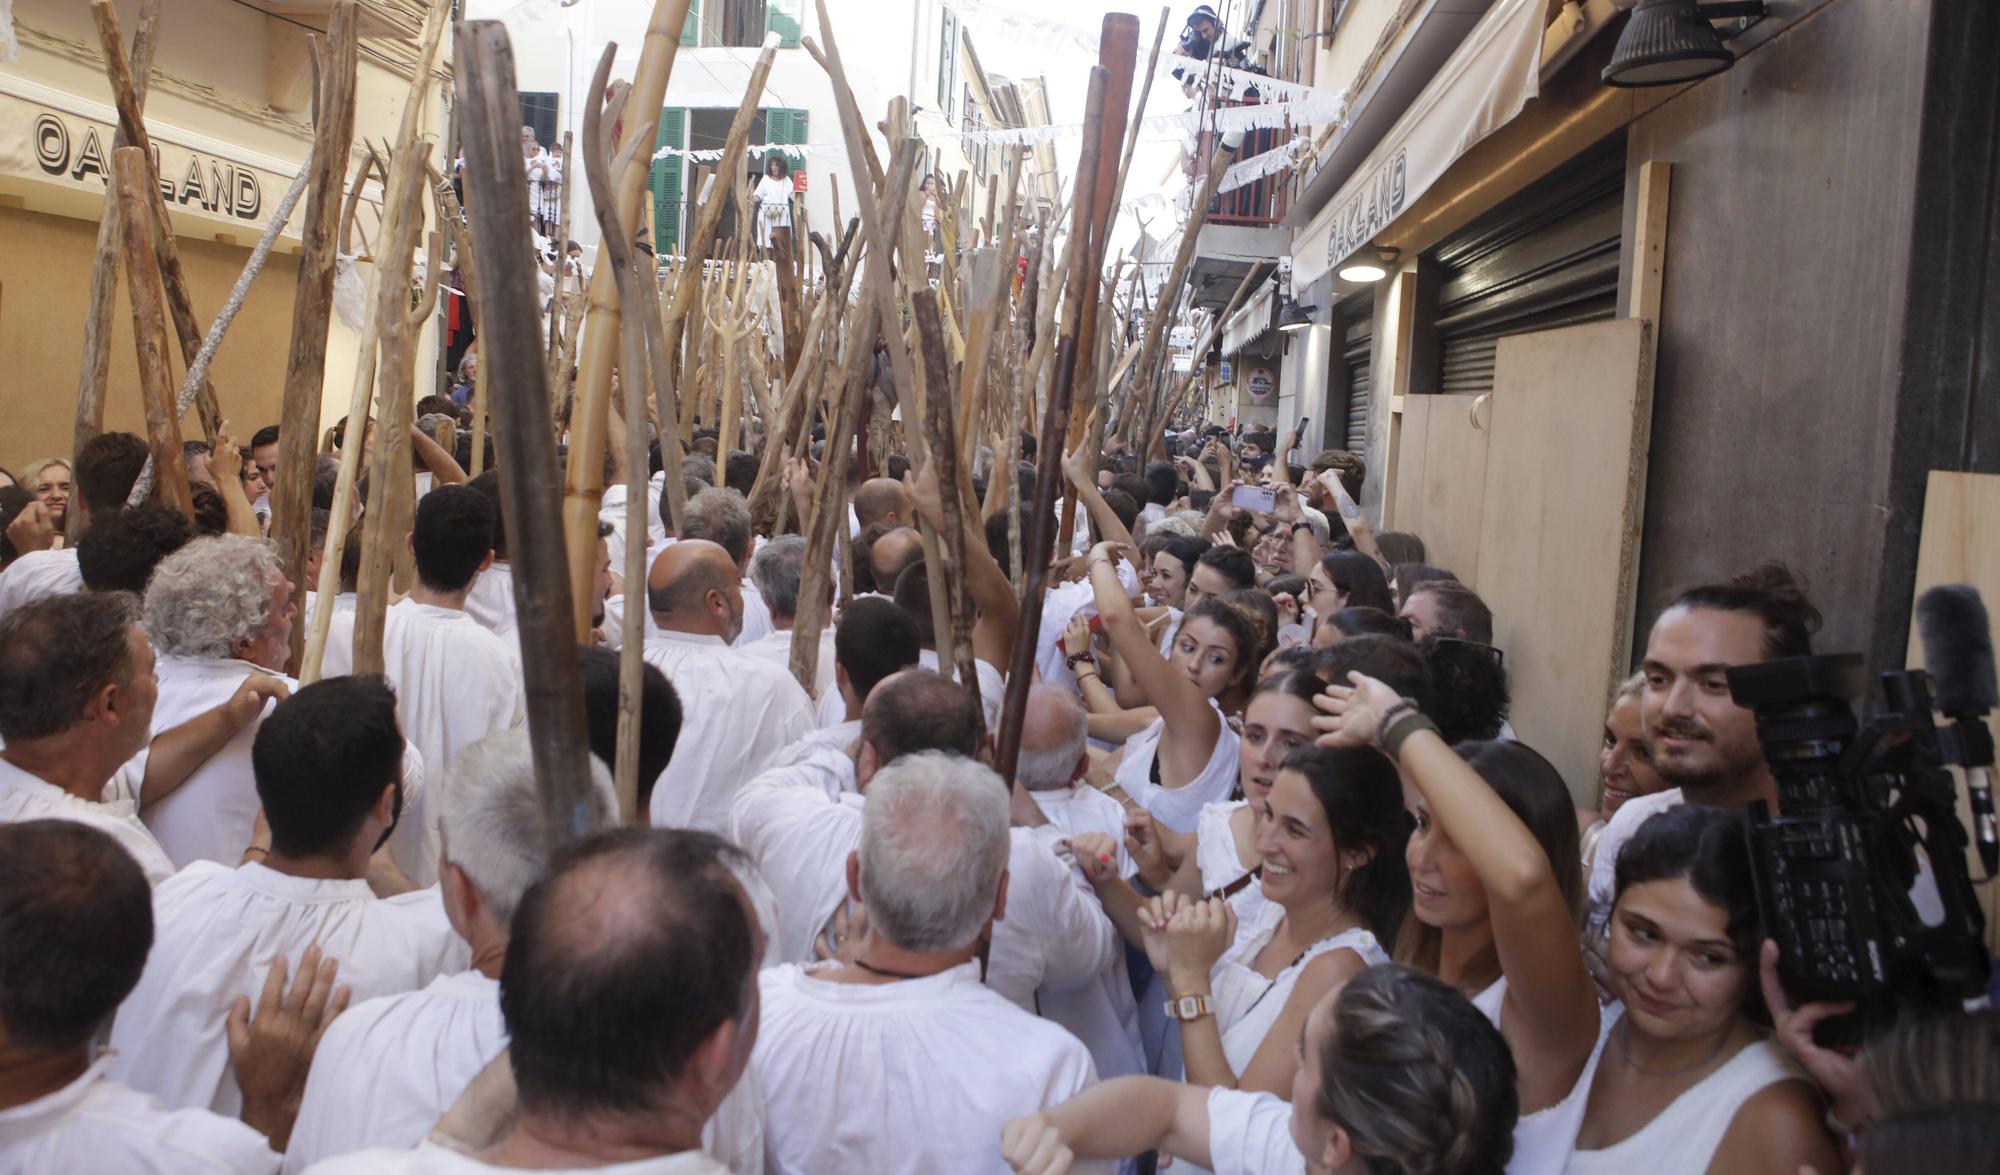 Eindrücke vom traditionellen Festspiel "Moros y Cristianos" in Pollença